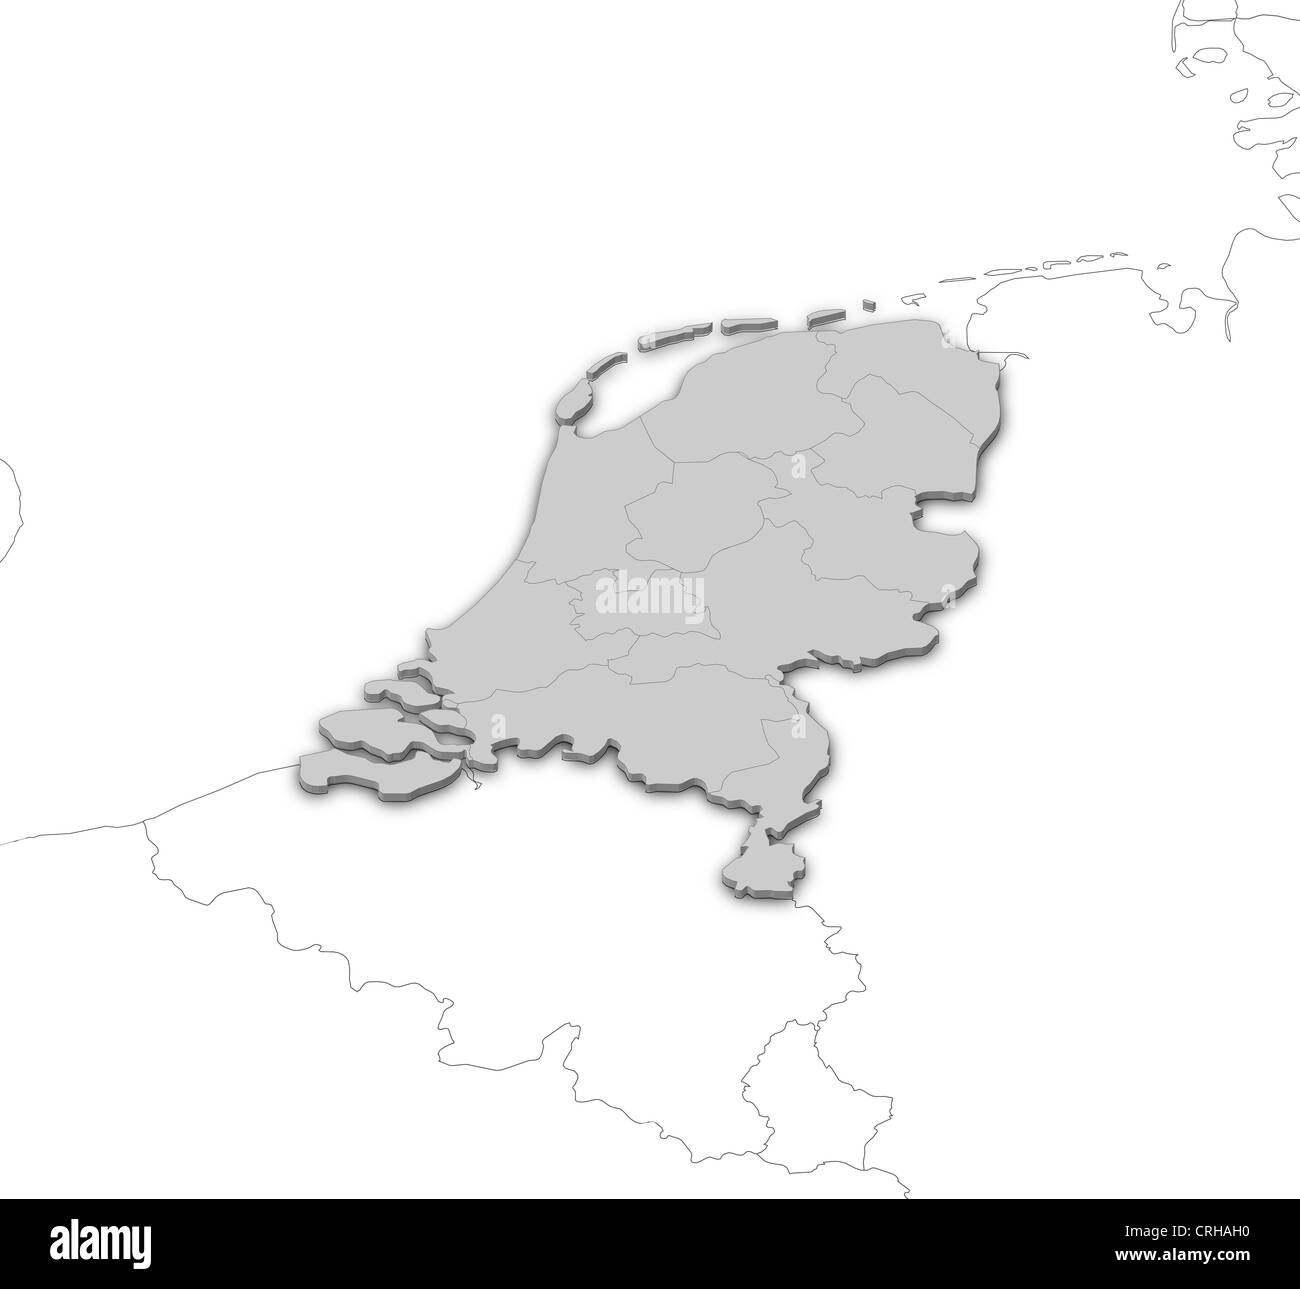 Mappa politico dei Paesi Bassi con i diversi Stati membri. Foto Stock